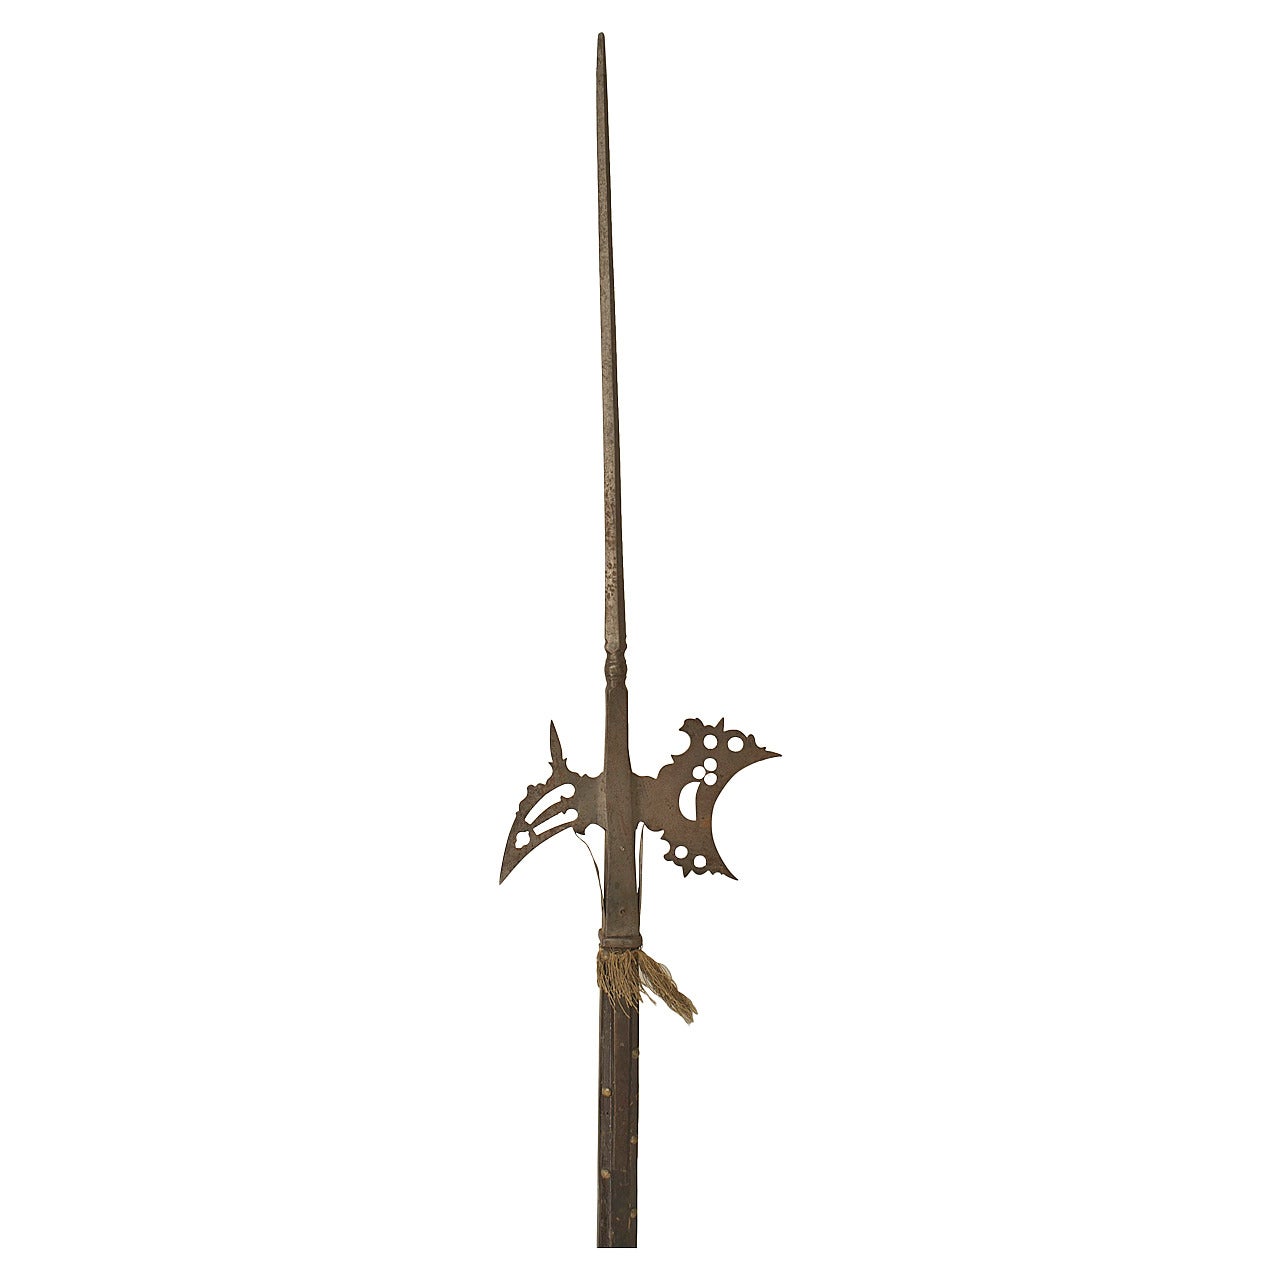 English Renaissance Style Halberd Spear